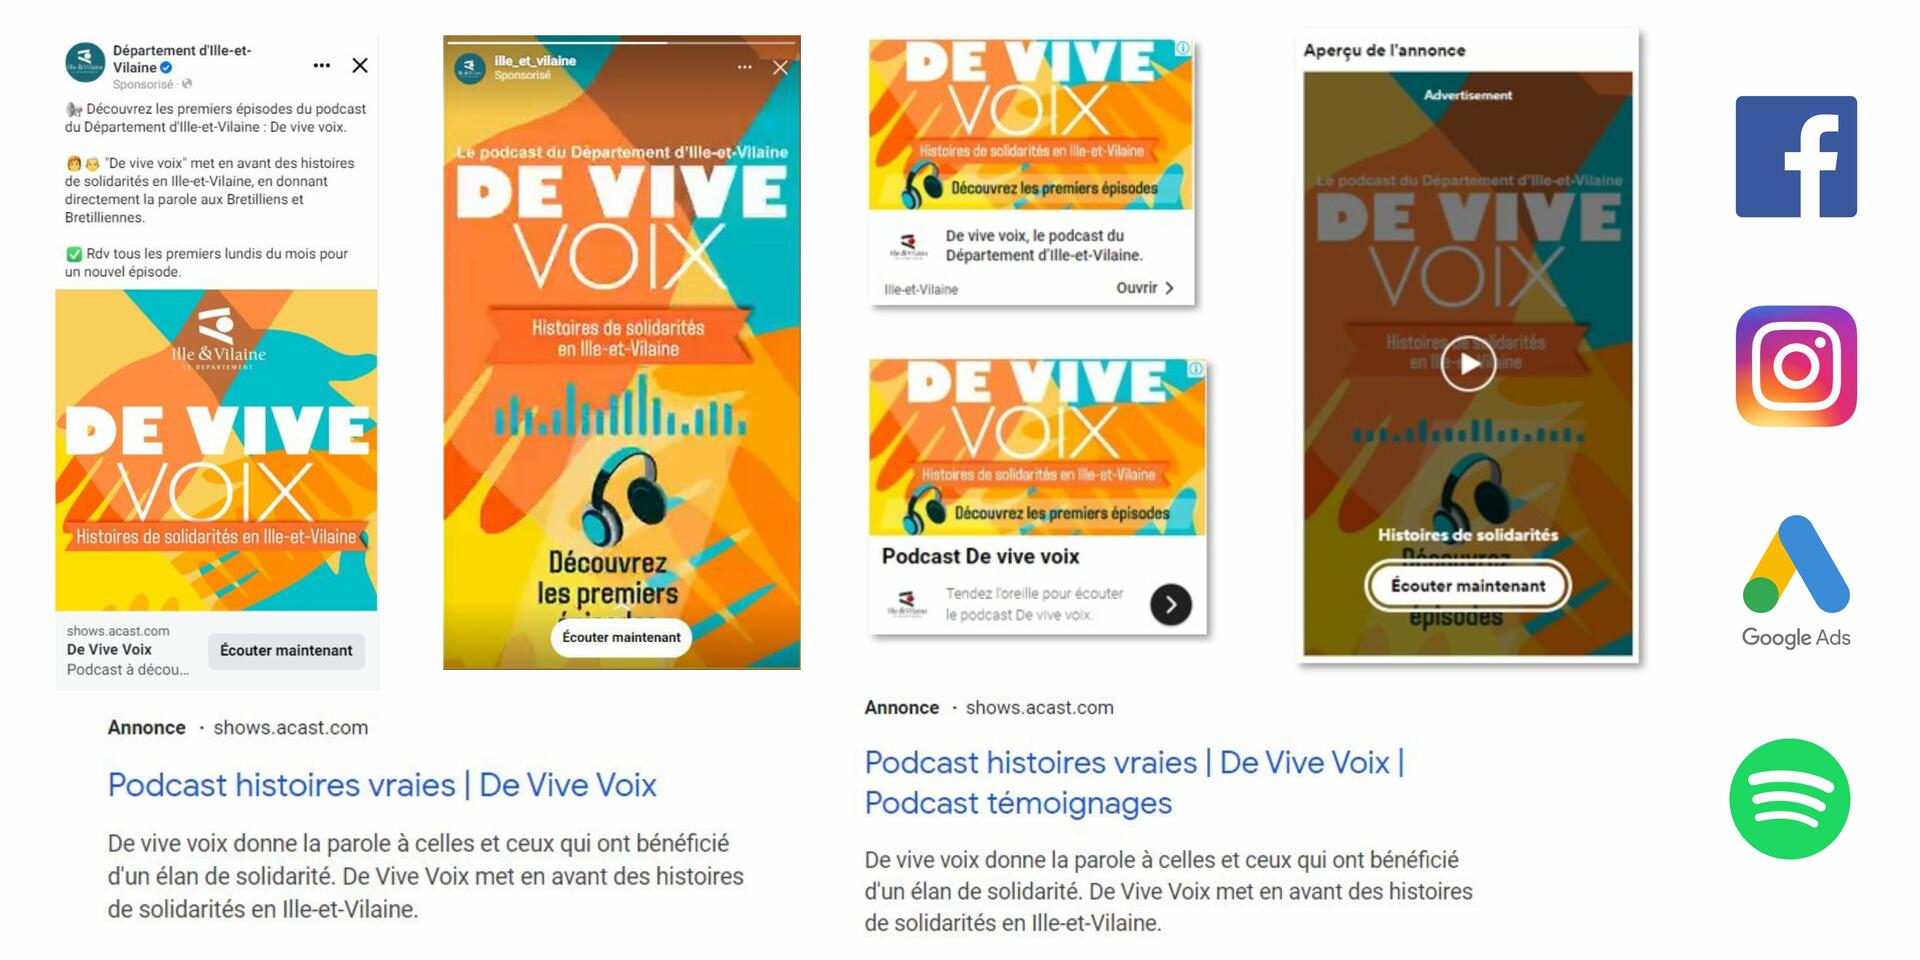 De Vive Voix podcast CD35